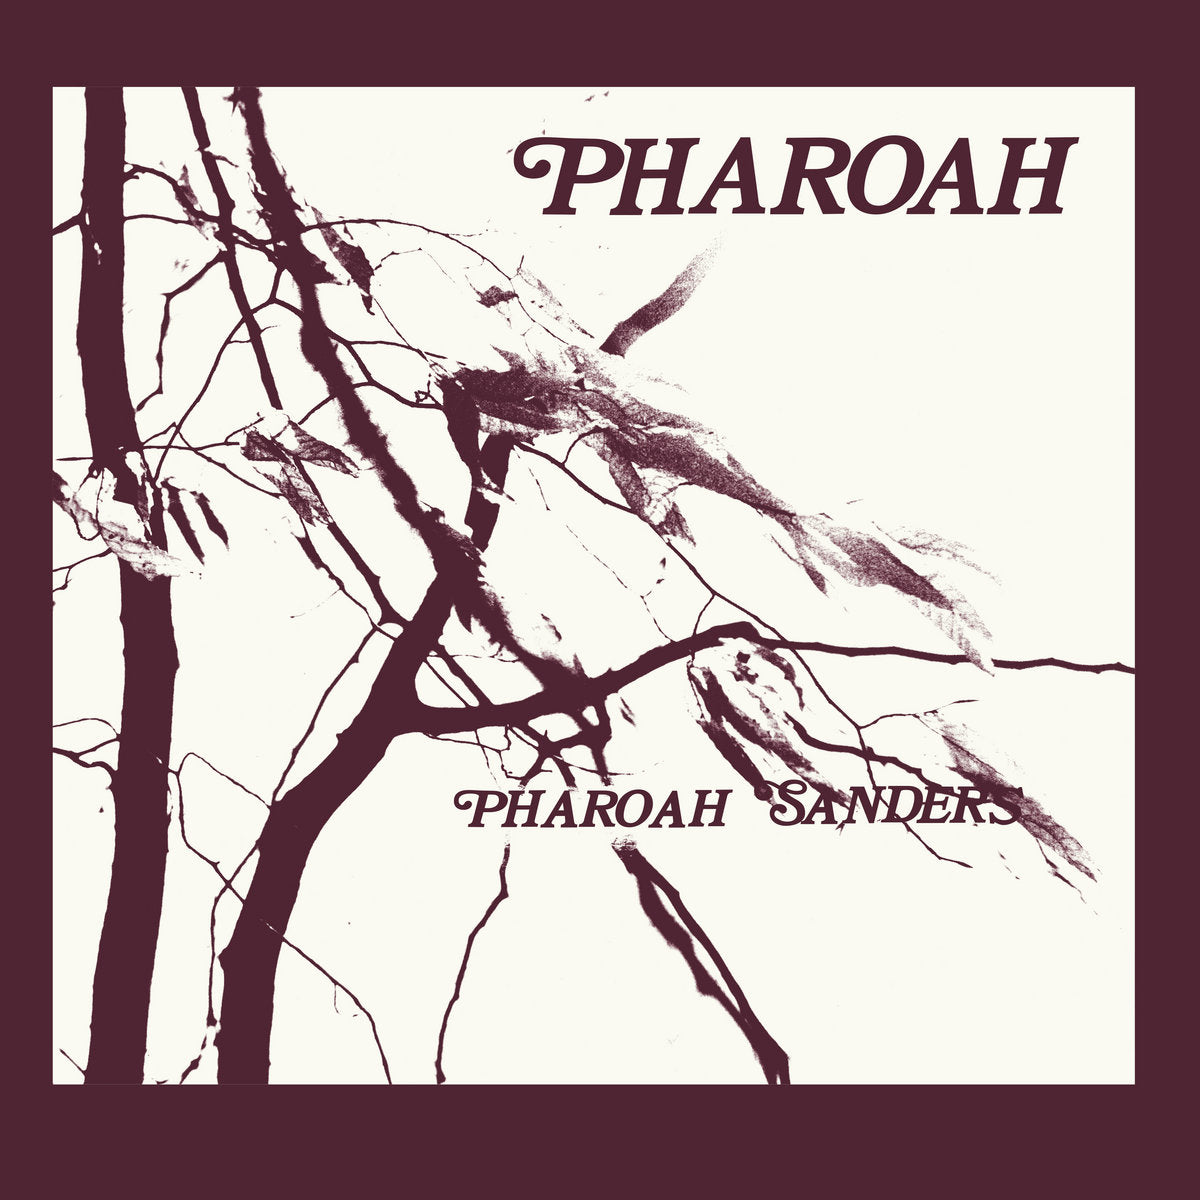 Pharoah Sanders - Pharoah - 2LP Box Set